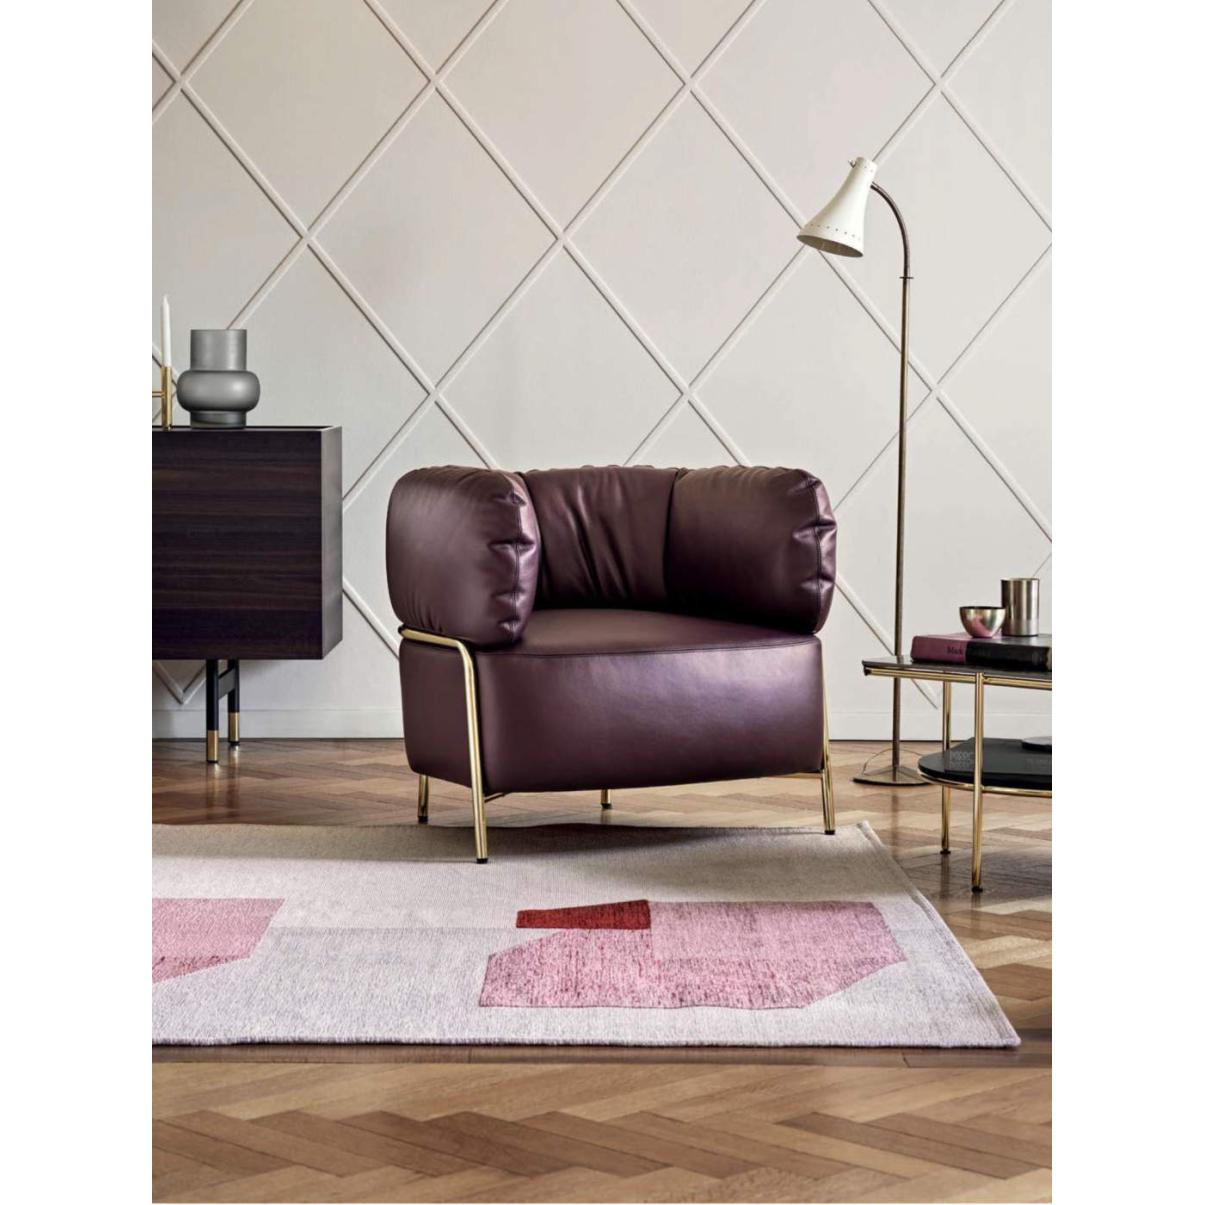 Calligaris Quadrotta armchair // Quadrotta fotel